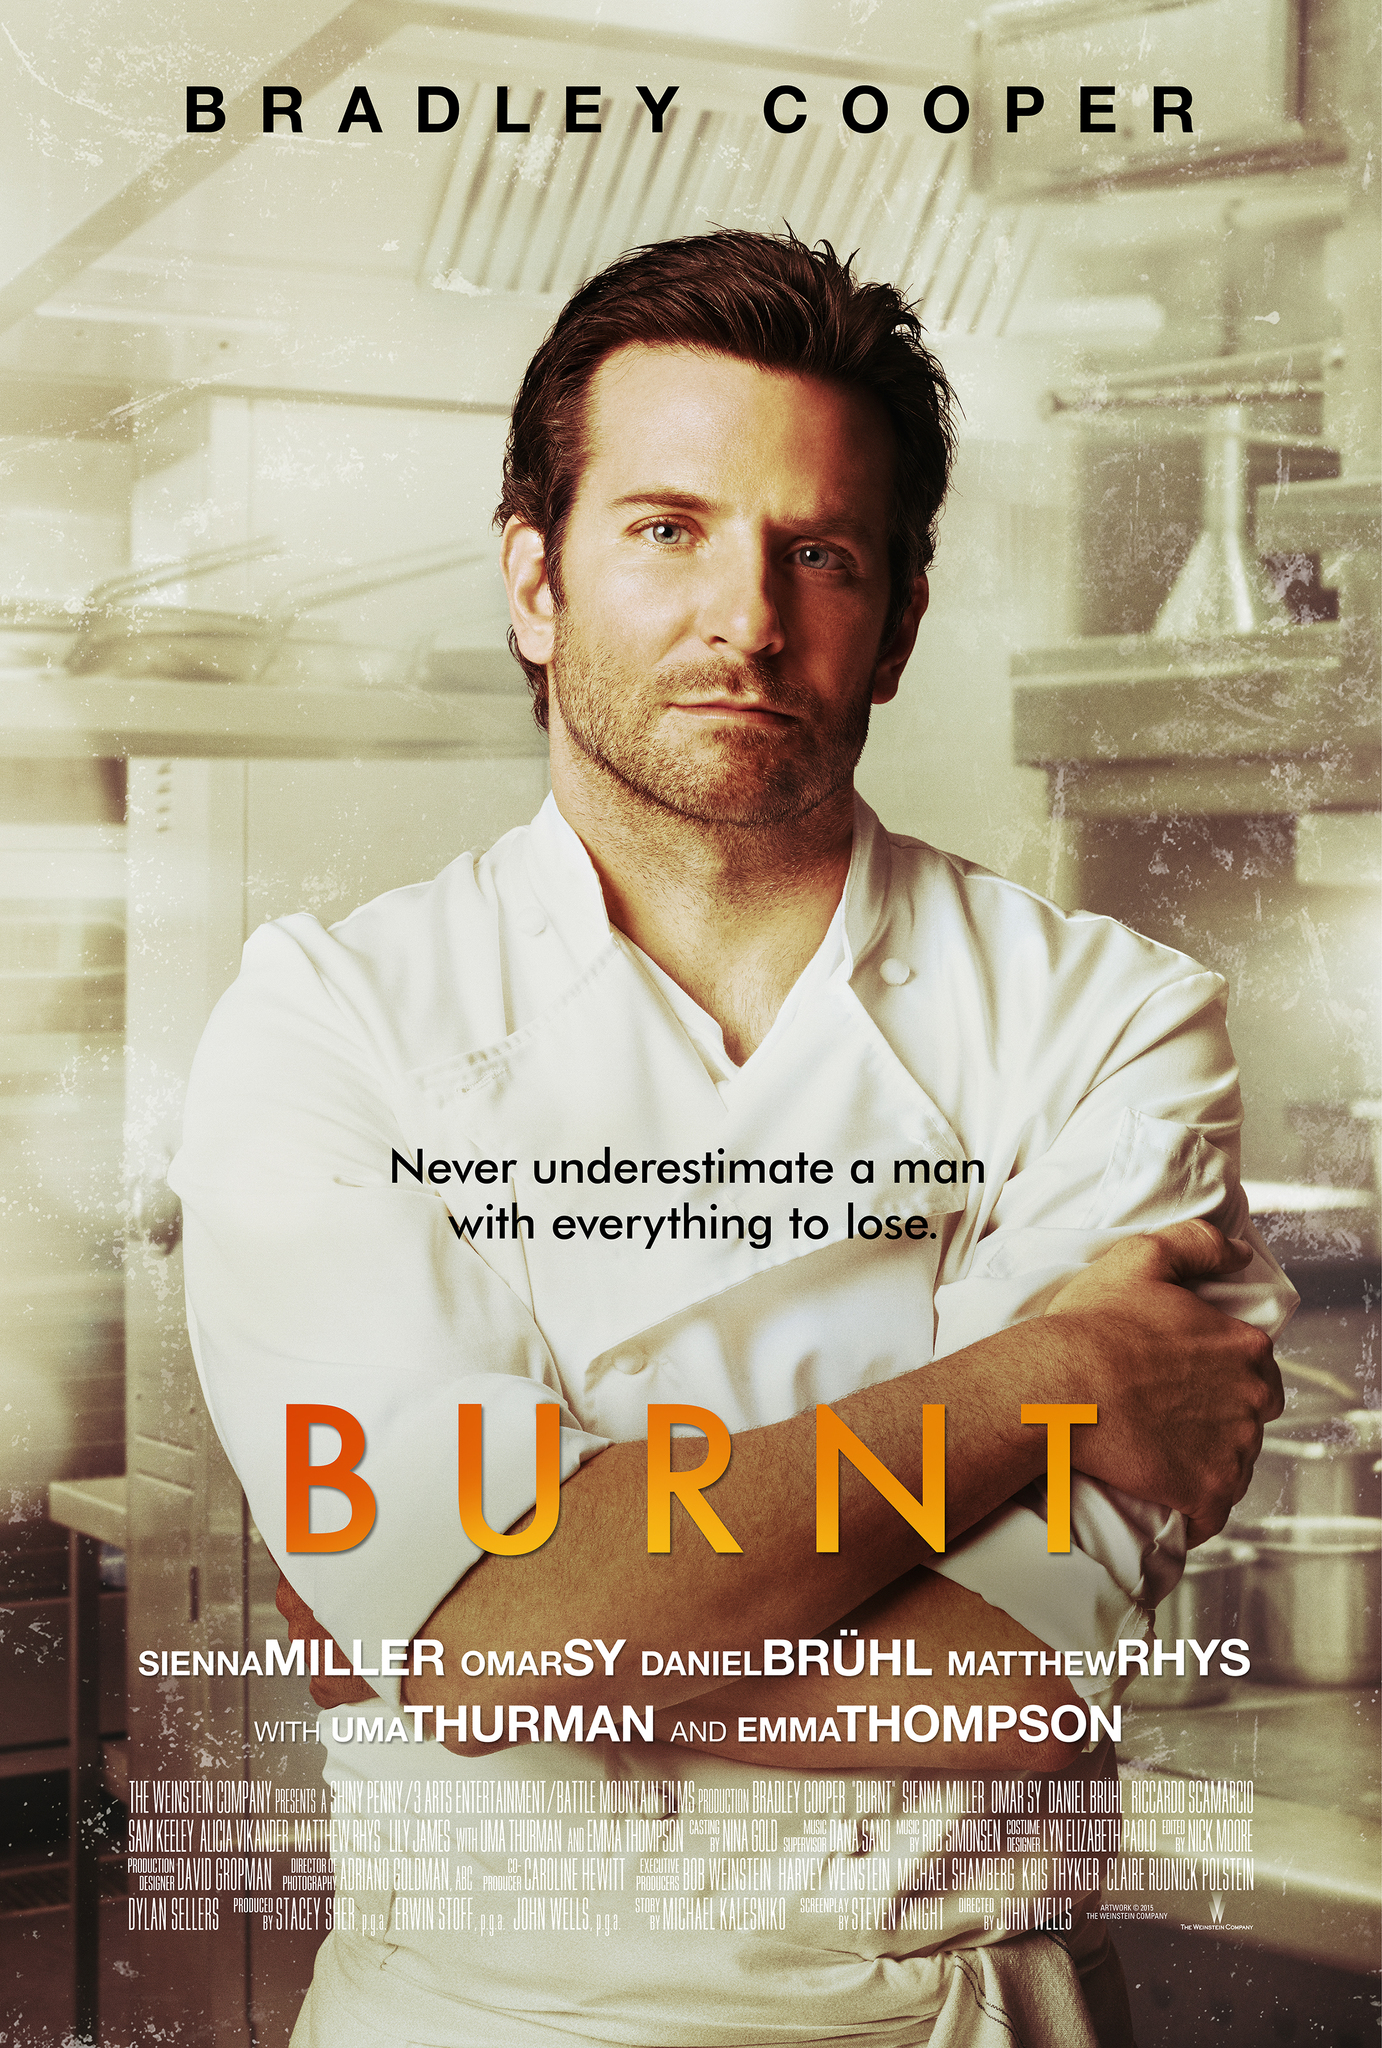 Burnt (2015) เบิร์นท รสชาติความเป็นเชฟ